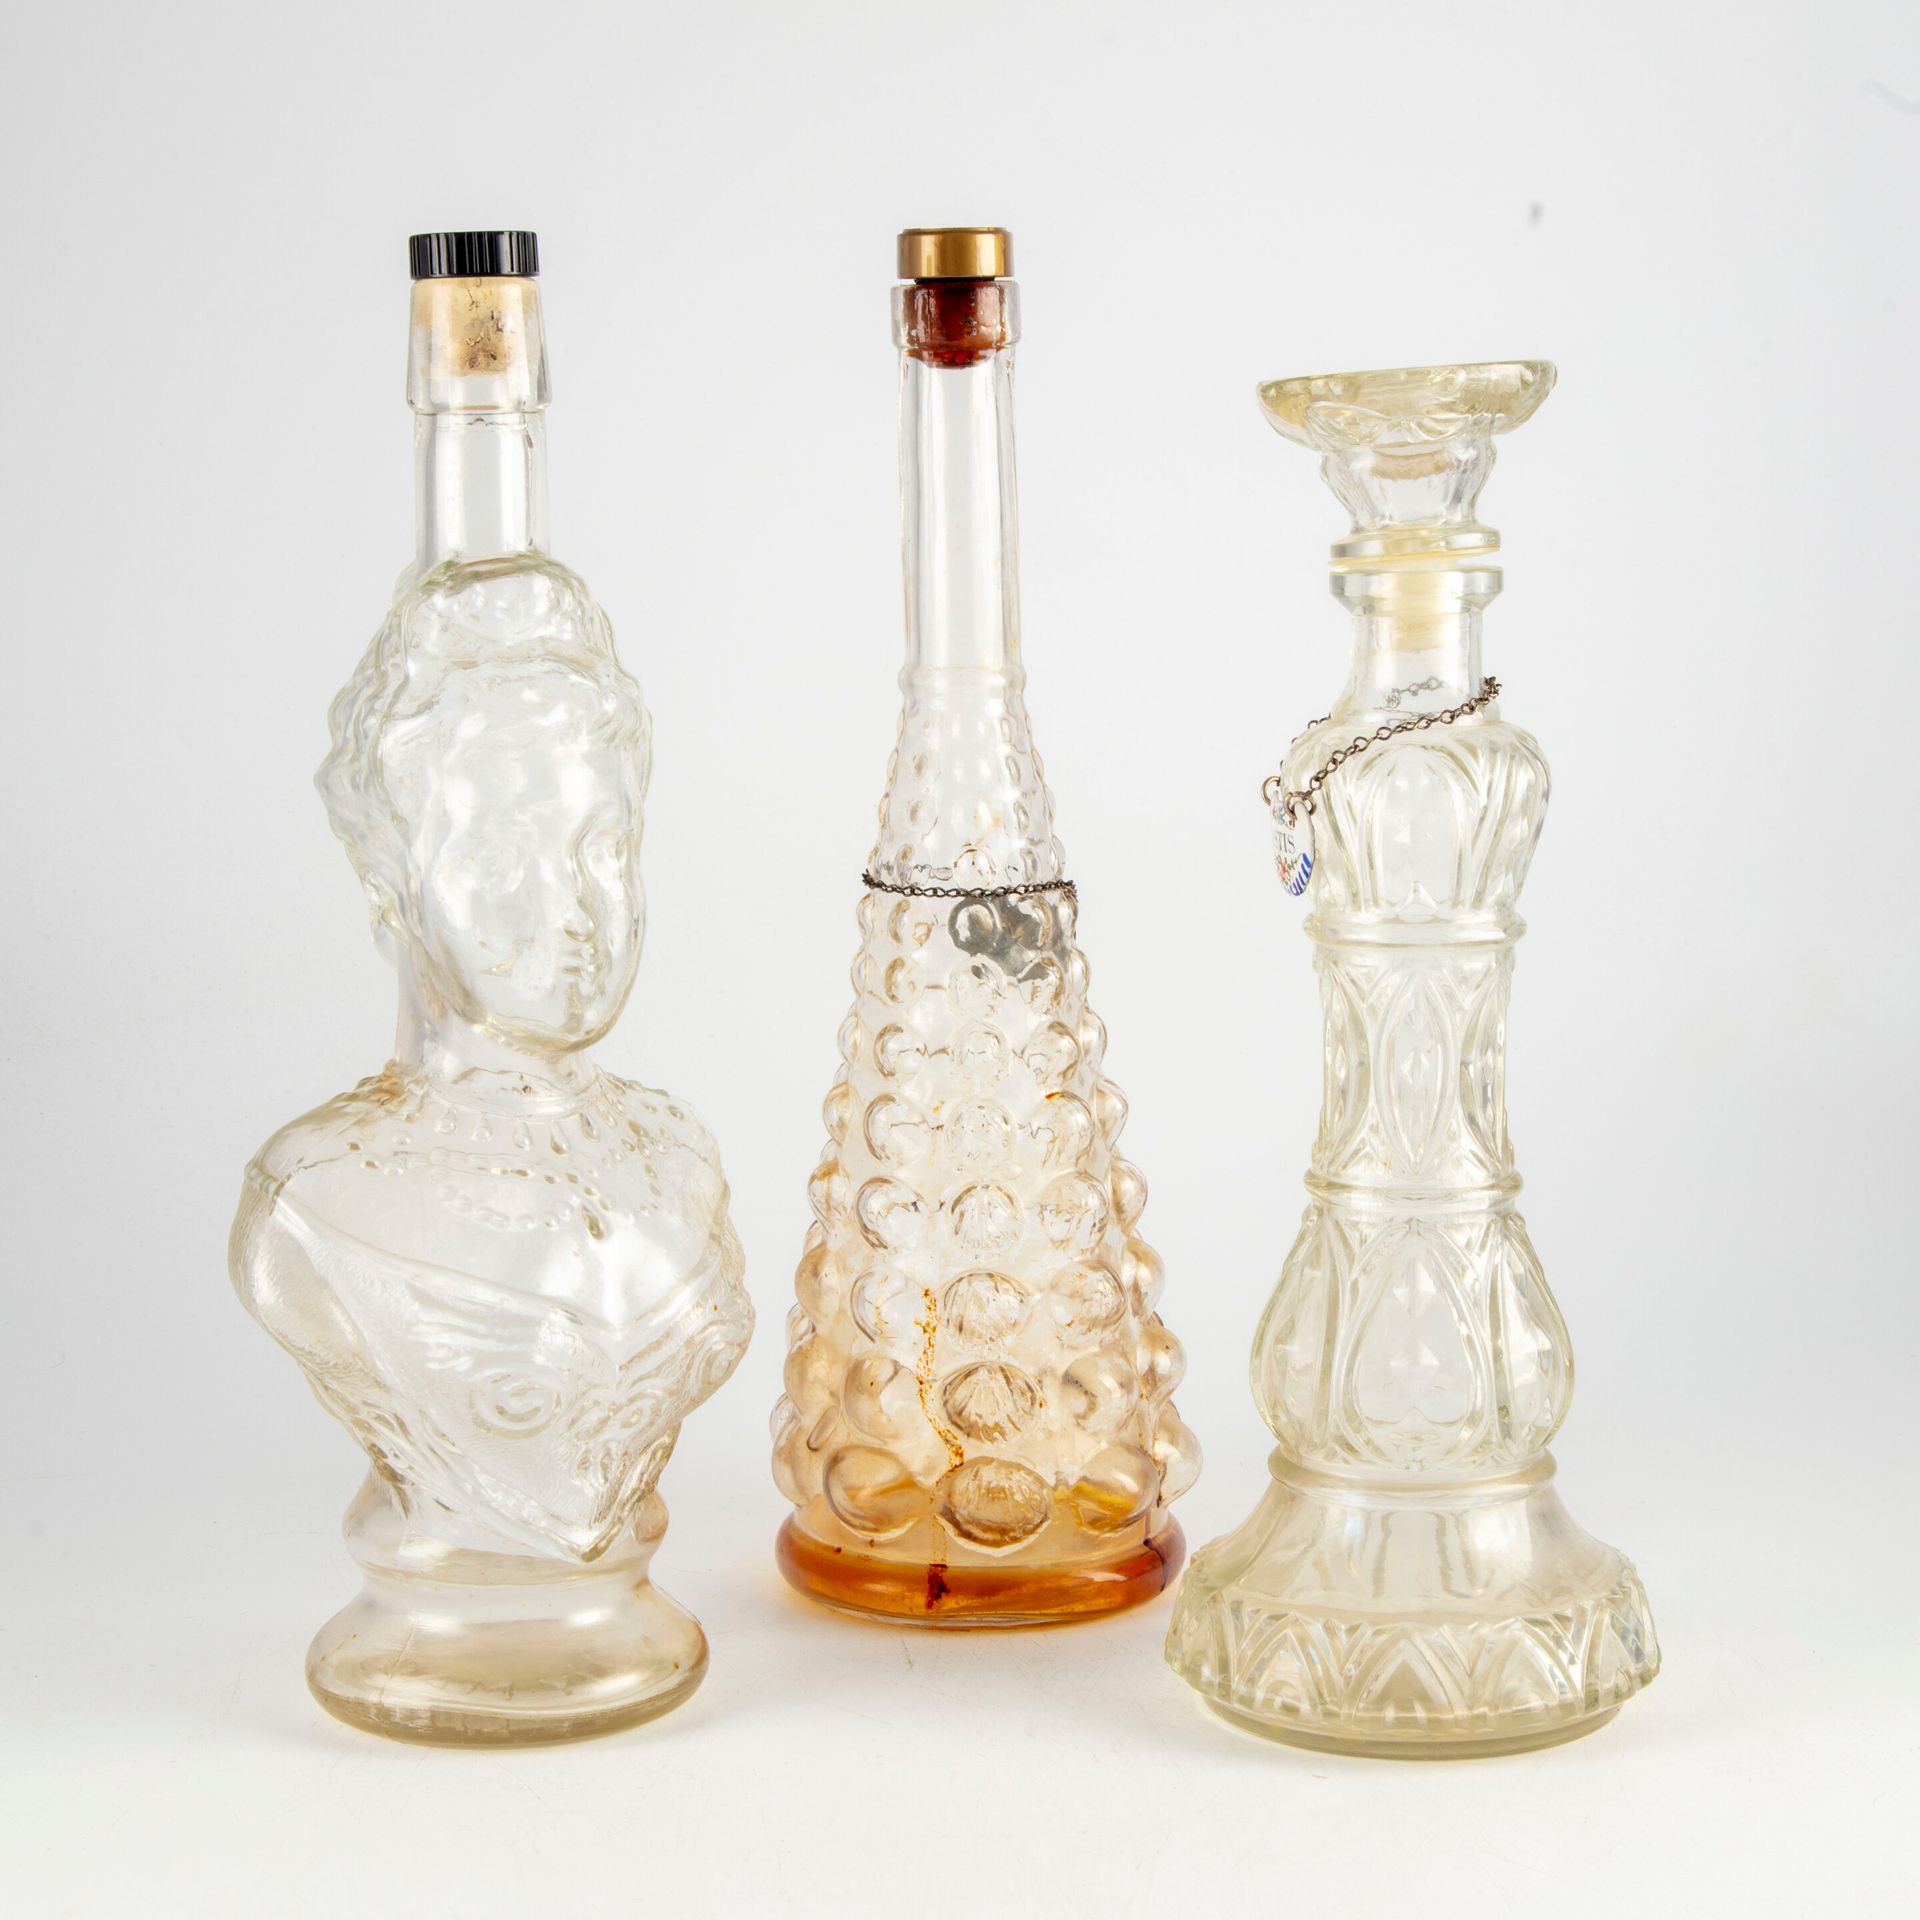 Null Trois bouteilles en verre de formes diverses

H.: 34 cm environ

Usures